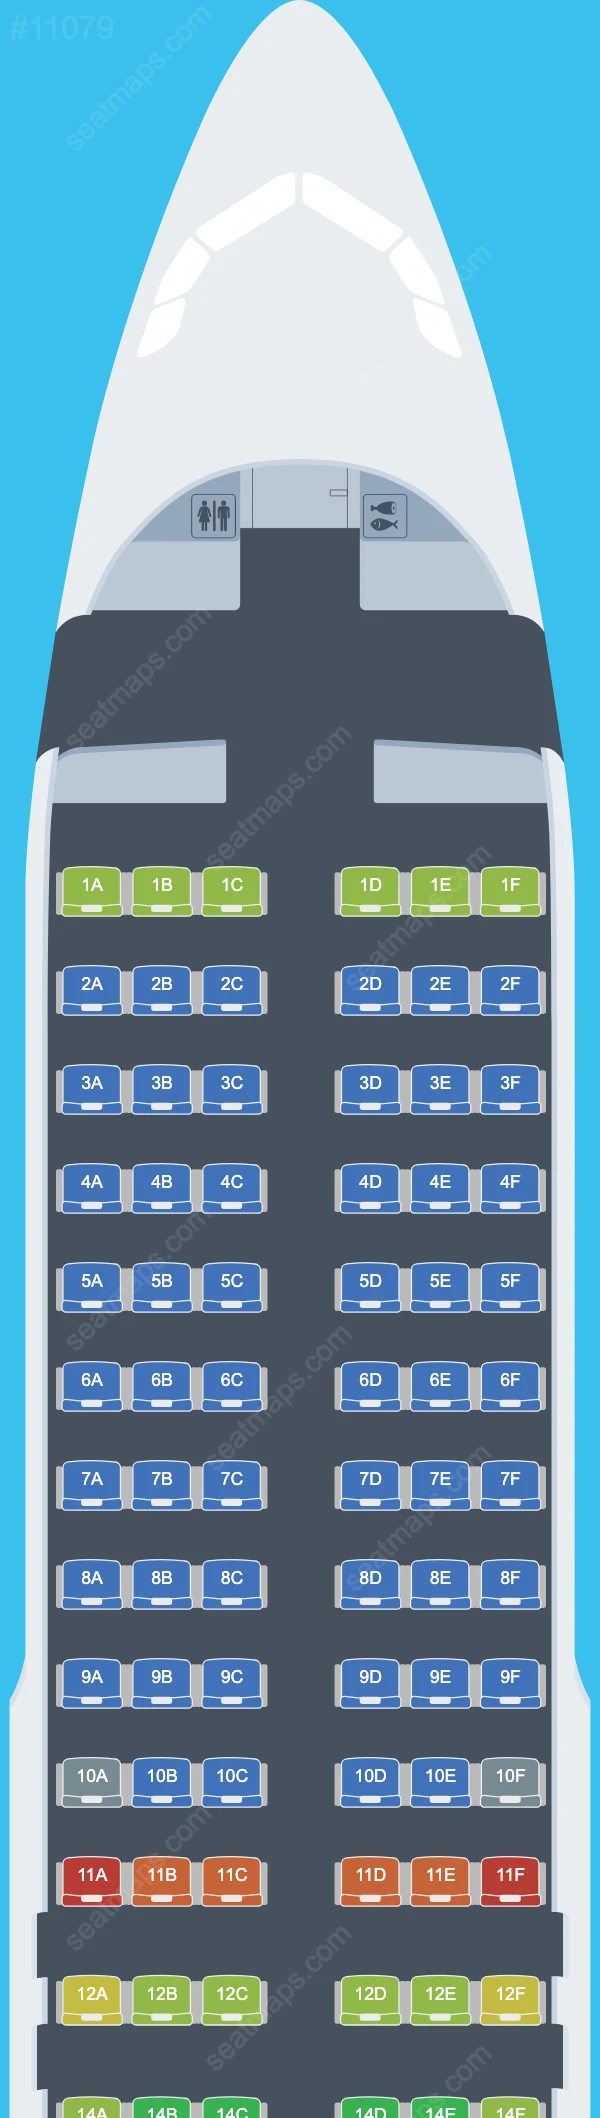 Pelita Air Airbus A320 Seat Maps A320-200